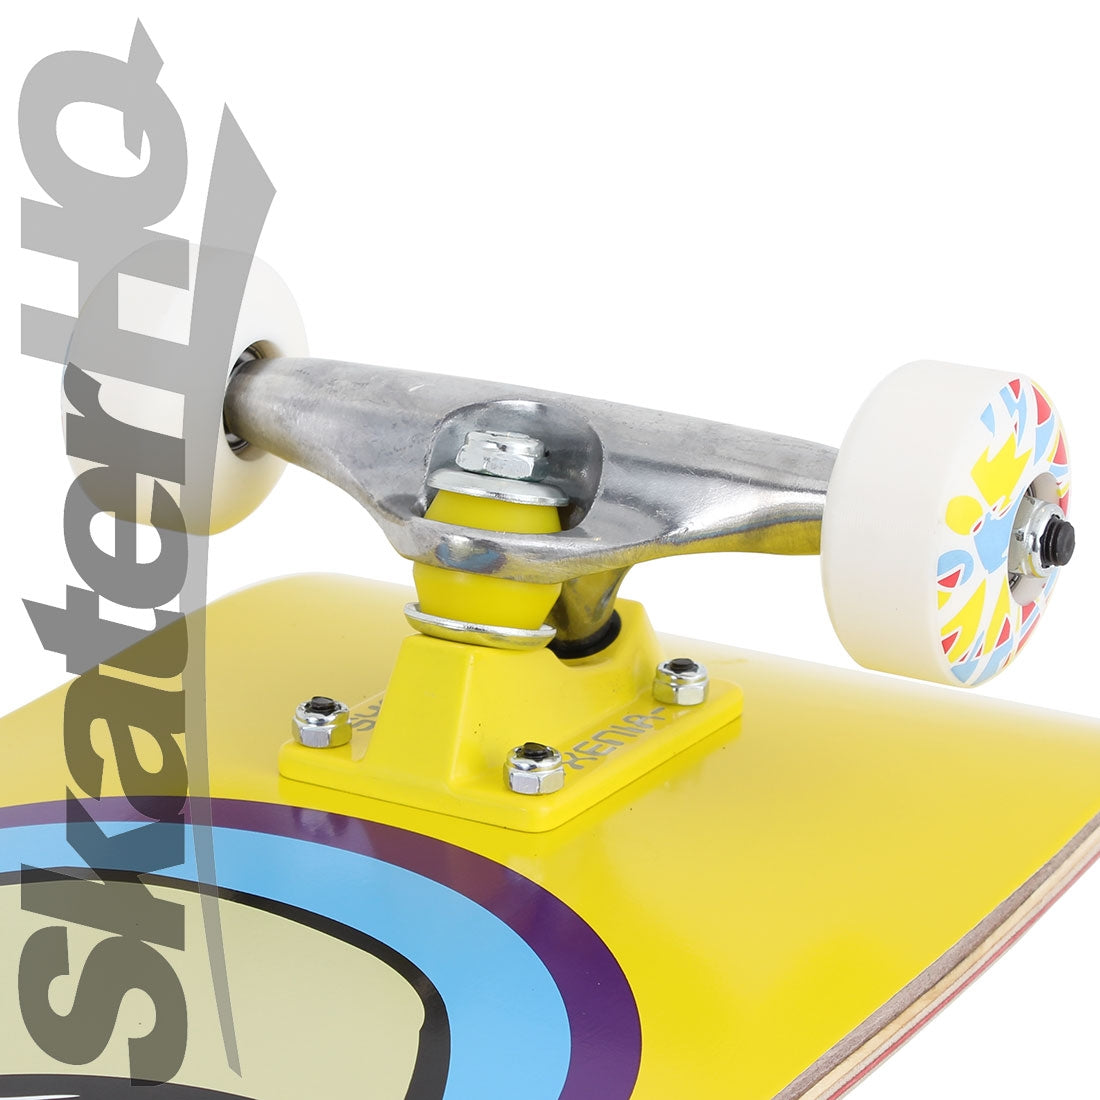 Alien Workshop Believe 7.75 Complete - Yellow/Purple Skateboard Completes Modern Street